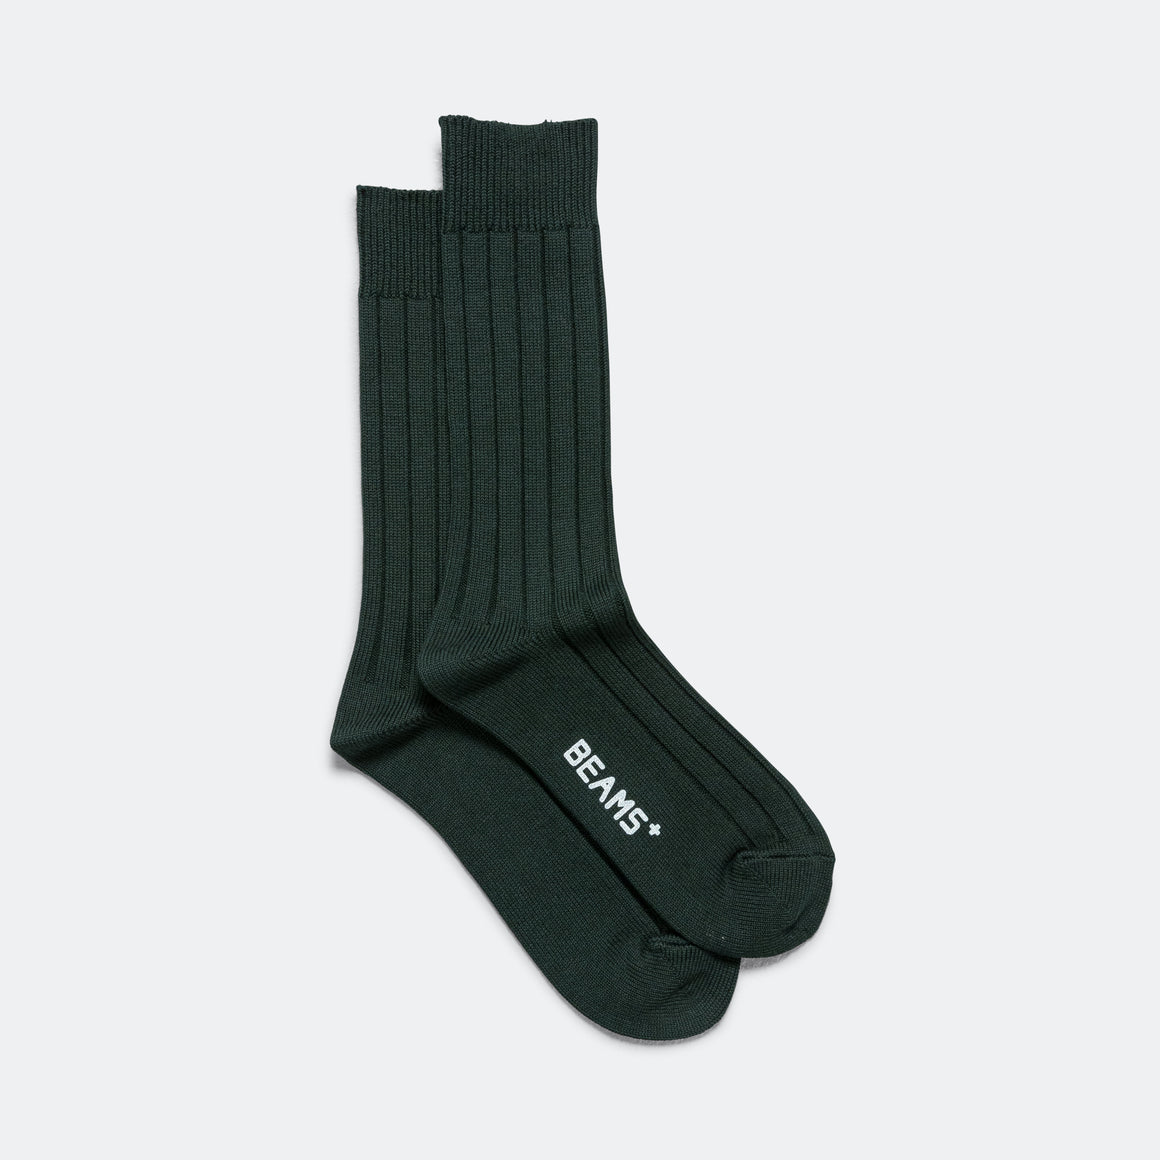 Solid Ribs Socks - Green